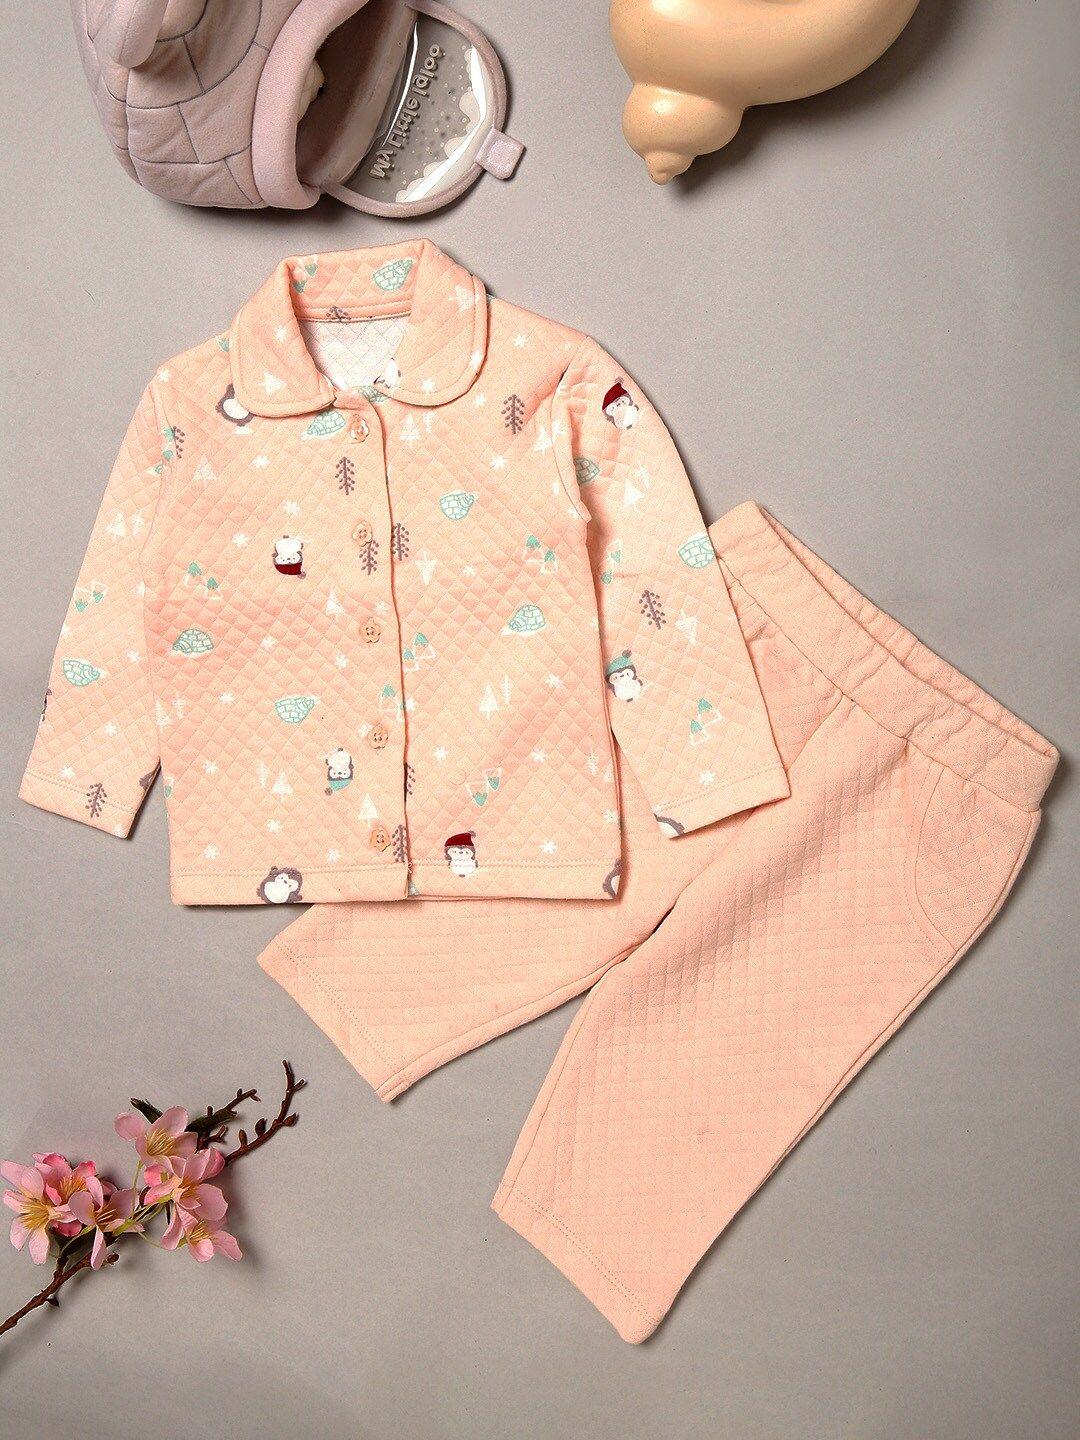 miarcus unisex kids peach-coloured printed shirt with pyjamas